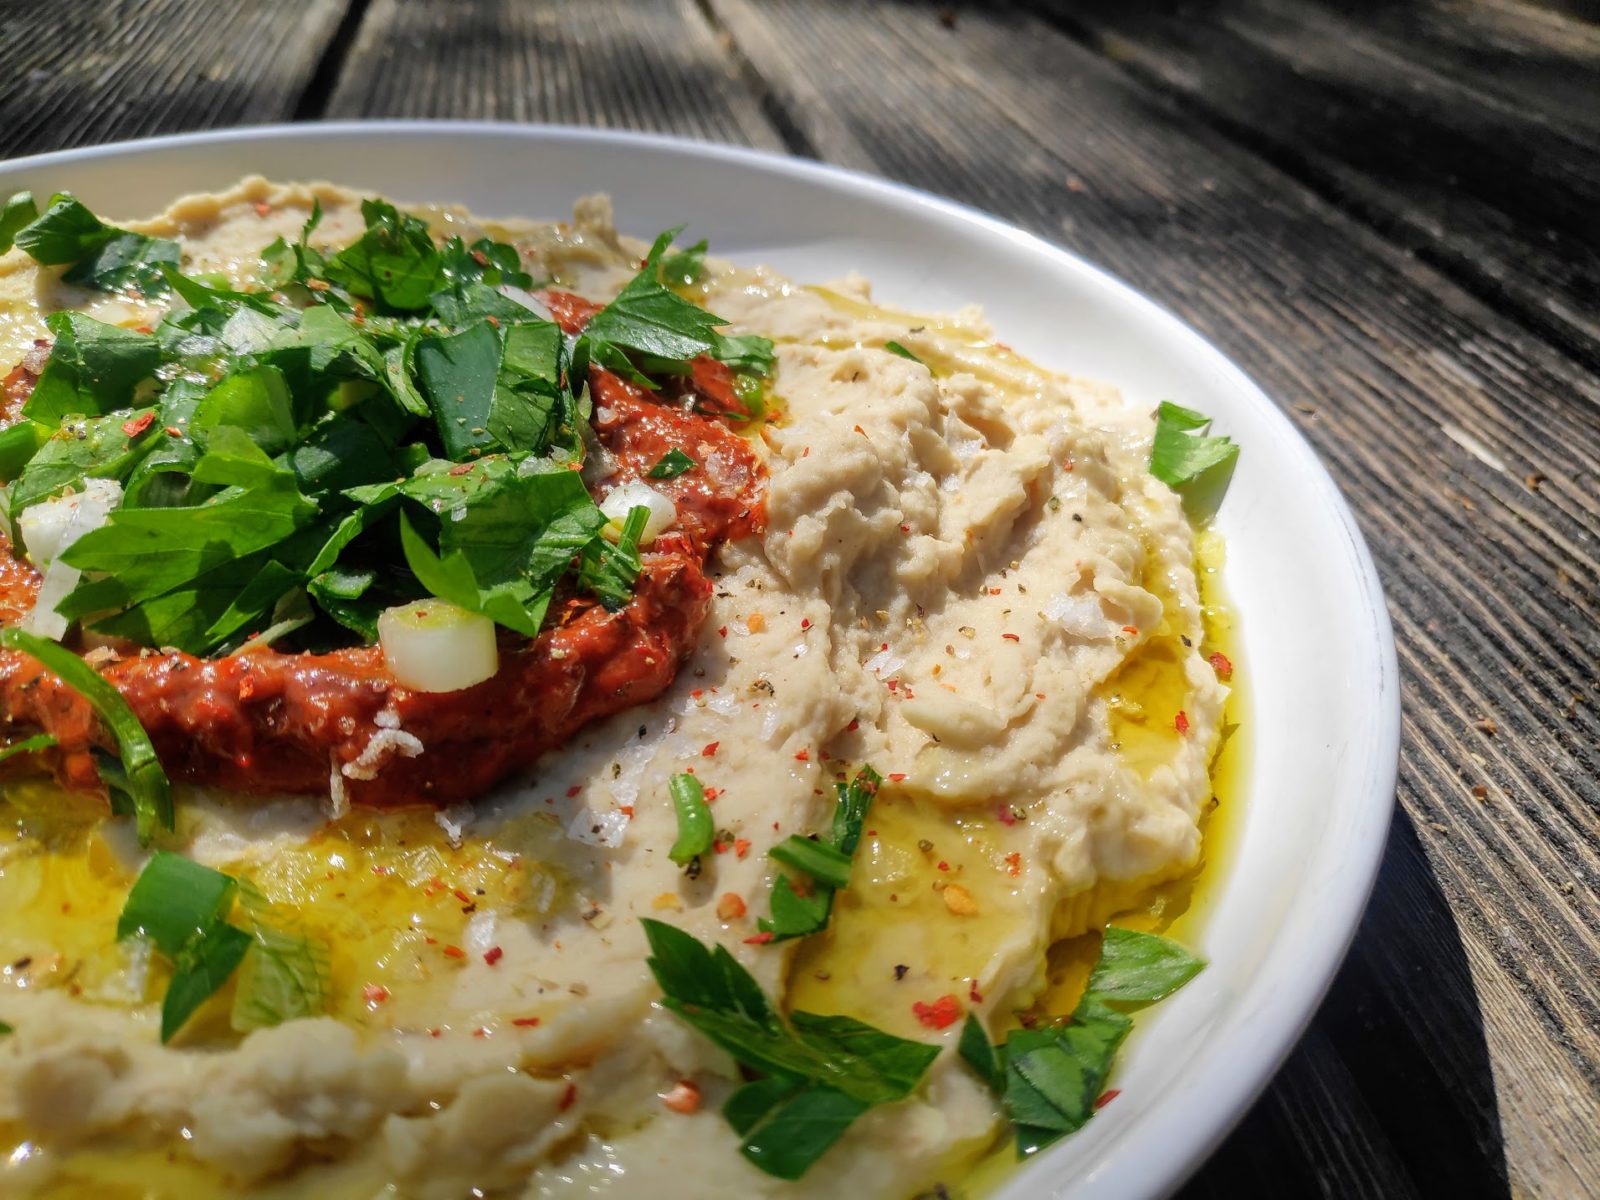 Bohnen-Hummus mit Harissa - whenannacooks